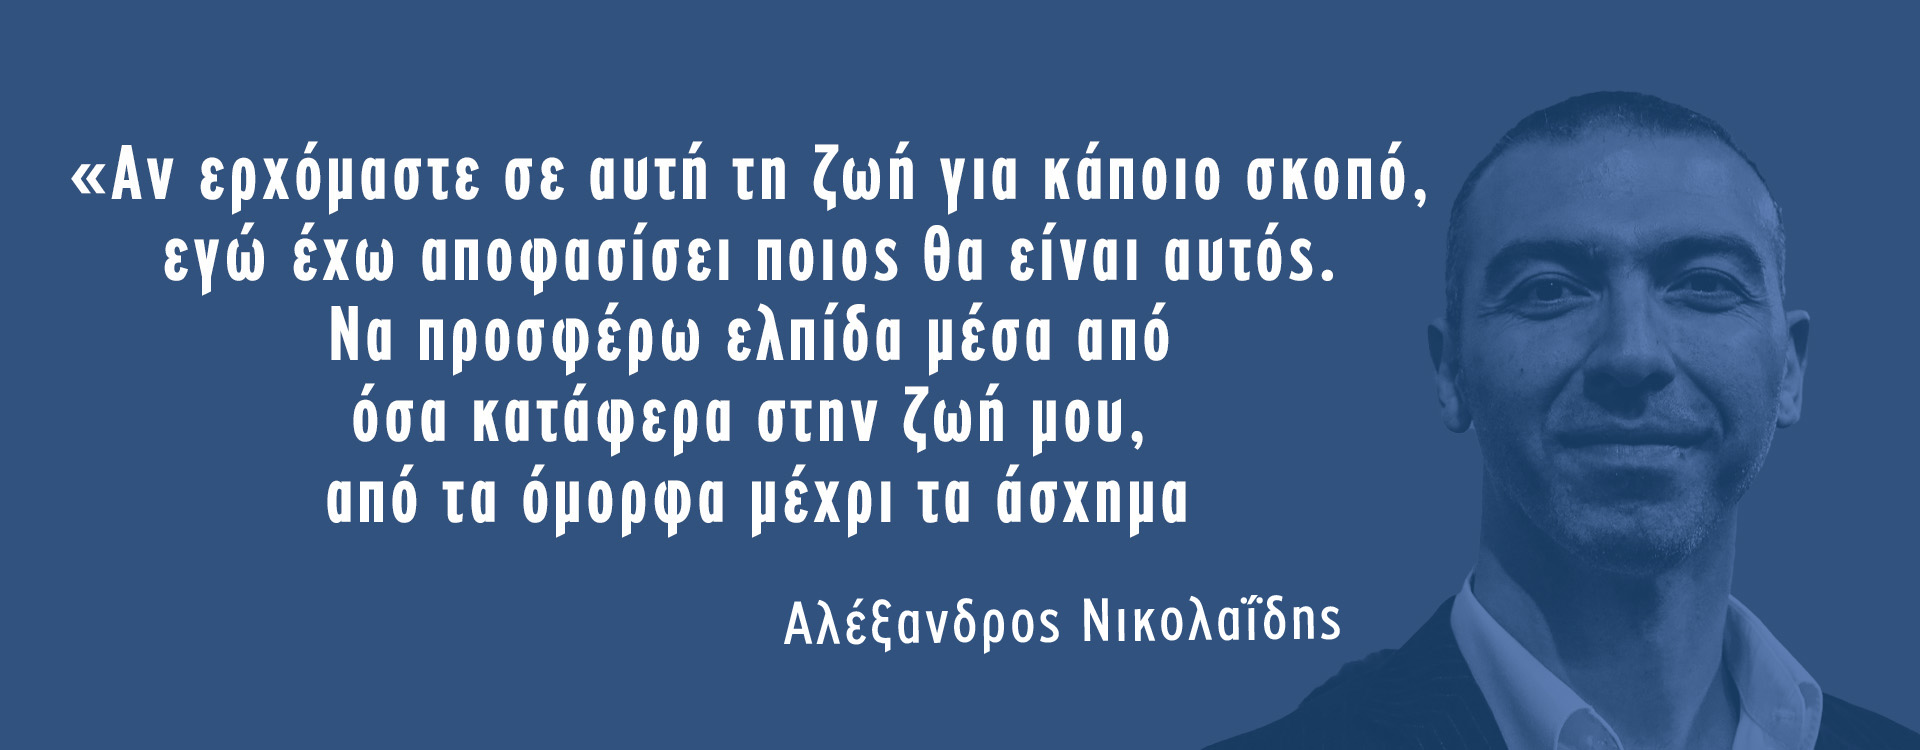 Το μήνυμα του Αλέξανδρου Νικολαΐδη